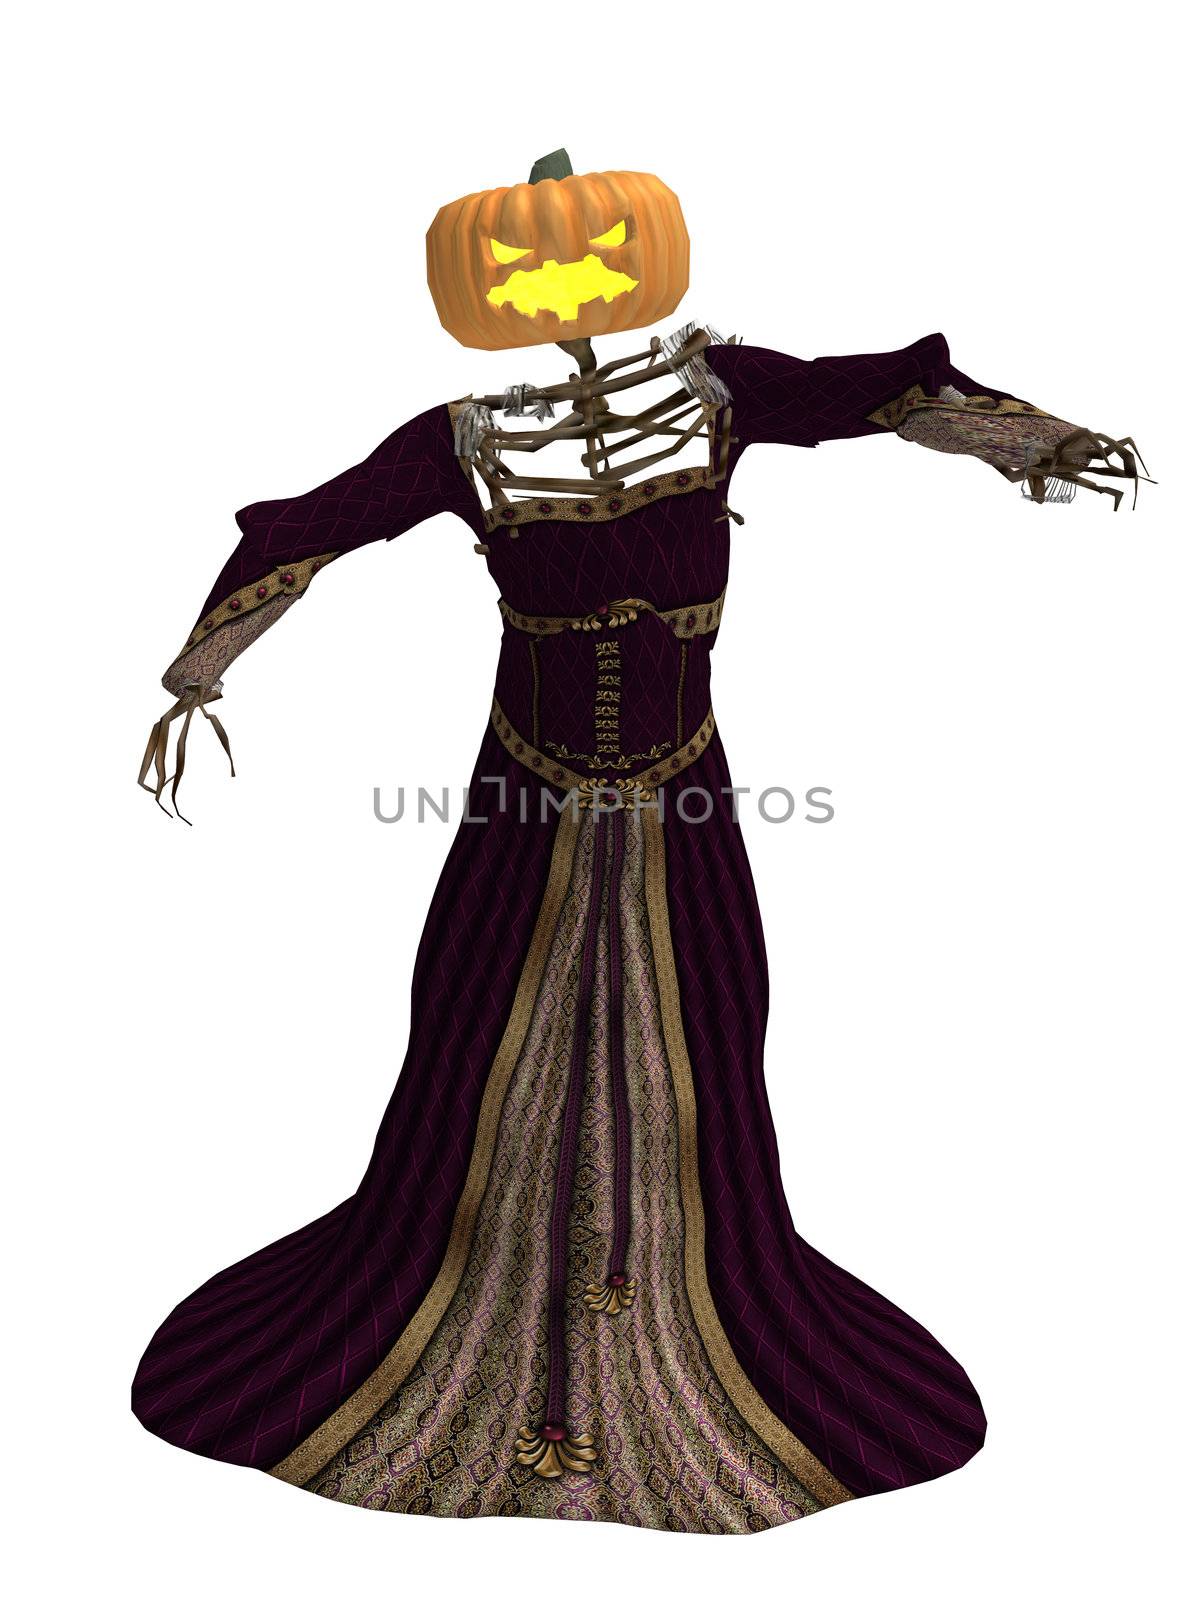 Scary pumpkin woman wearing a dress